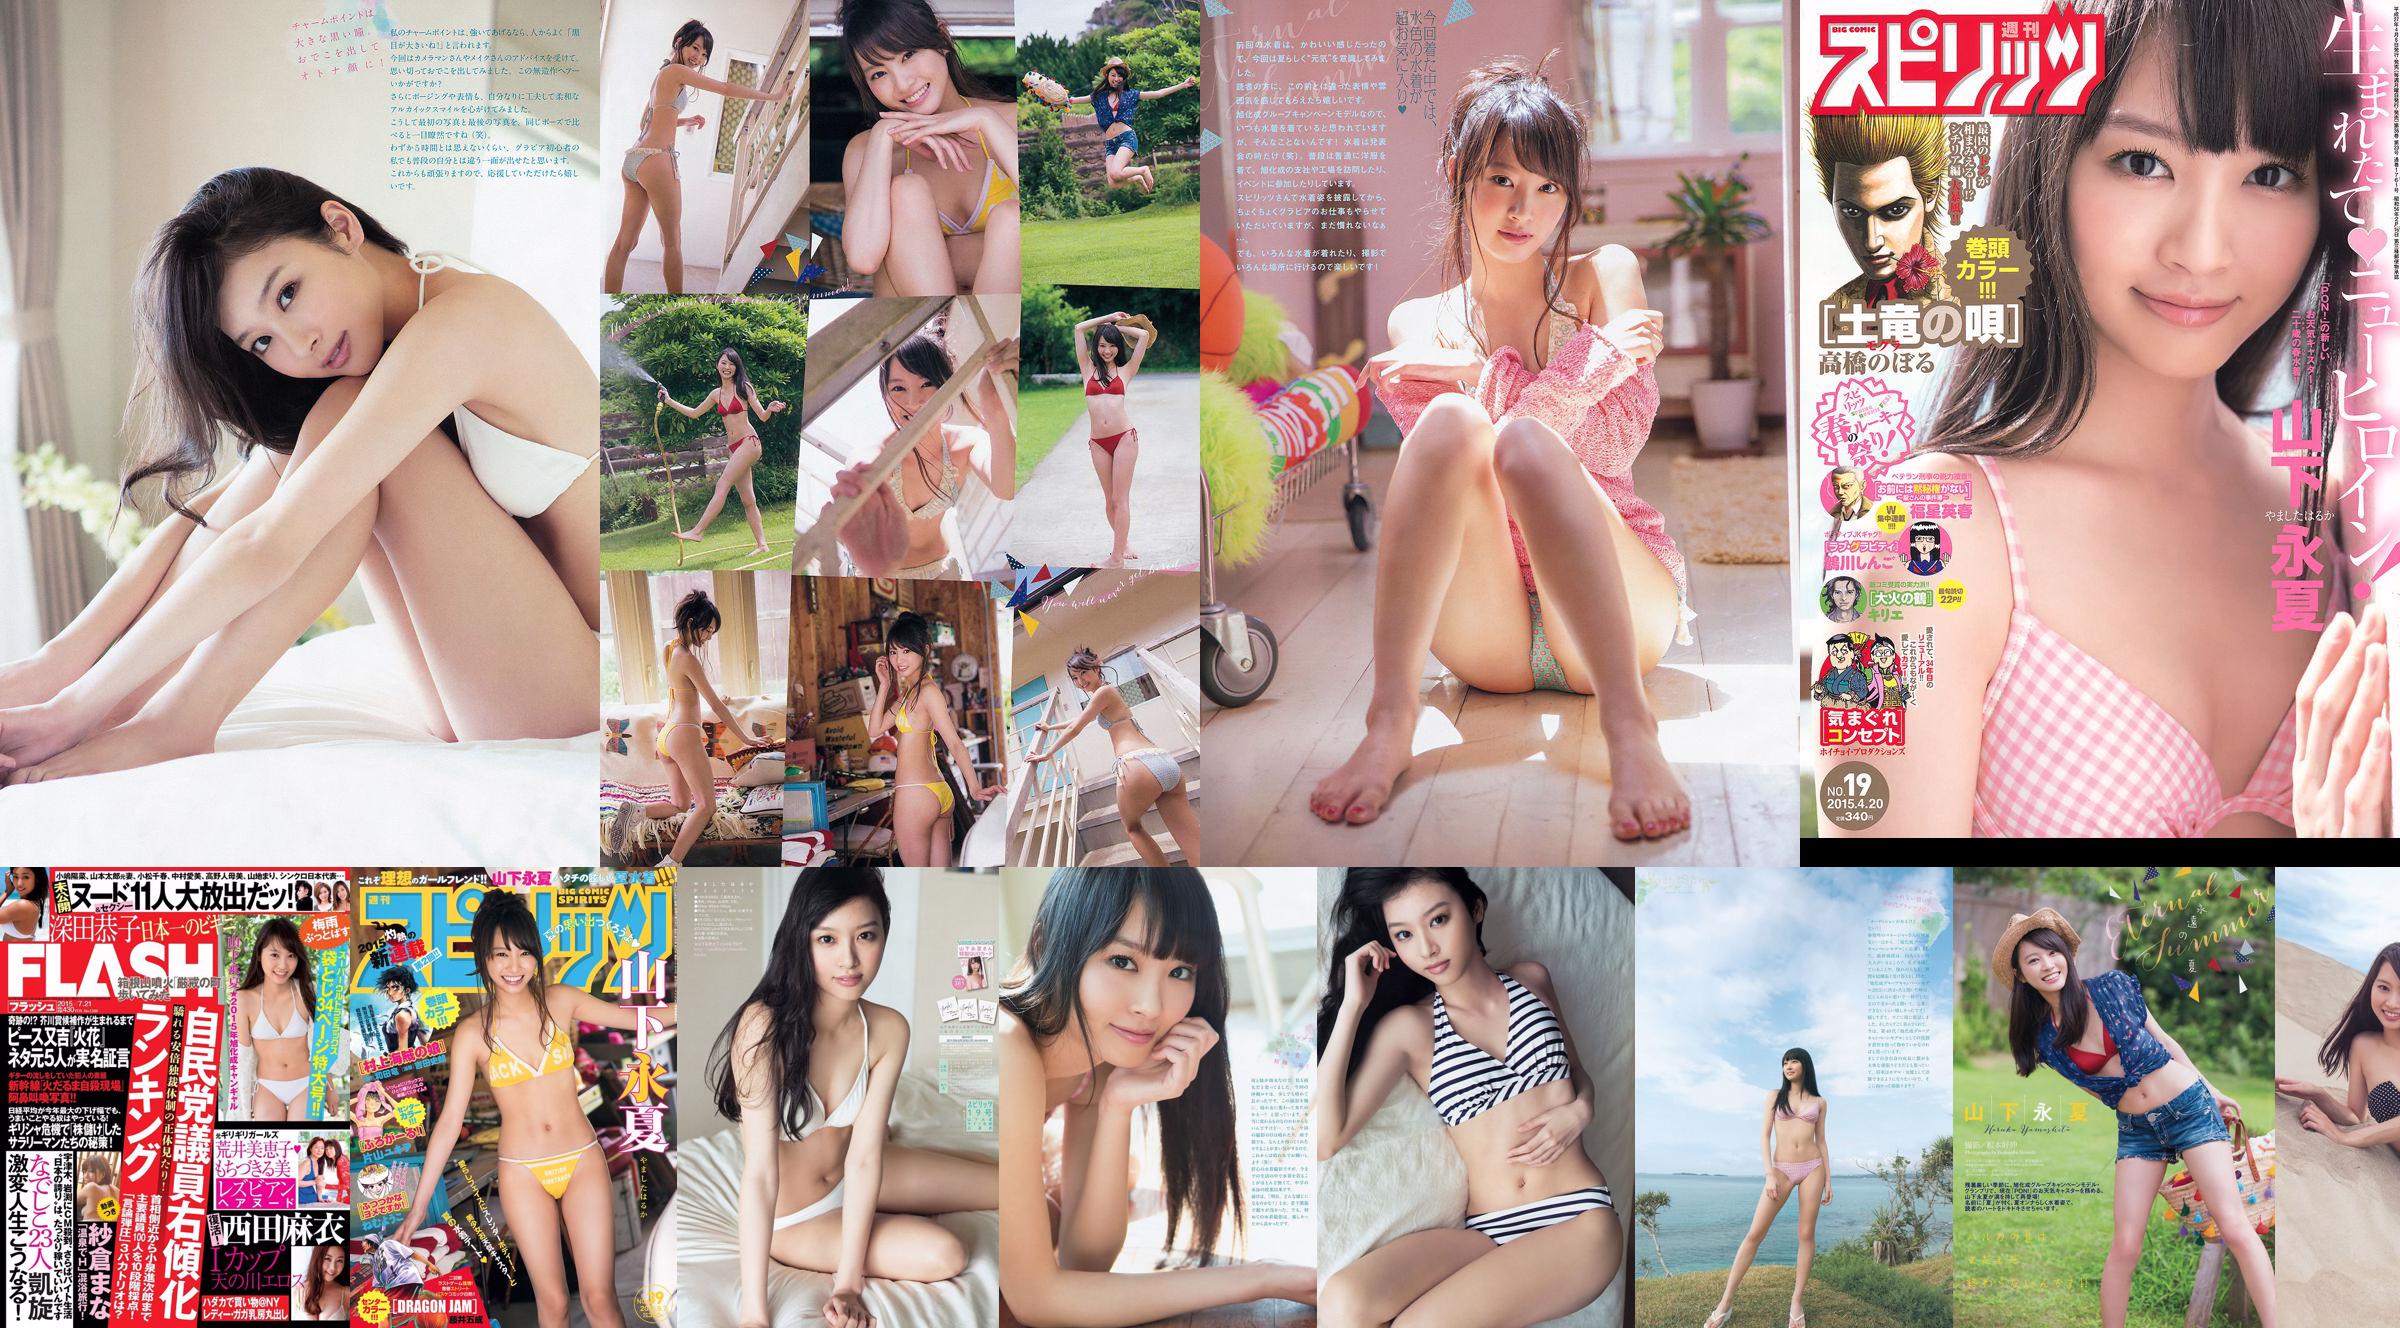 [Weekly Big Comic Spirits] Yamashita Yongxia 2015 No.19 Photo Magazine No.a04ed2 Page 1